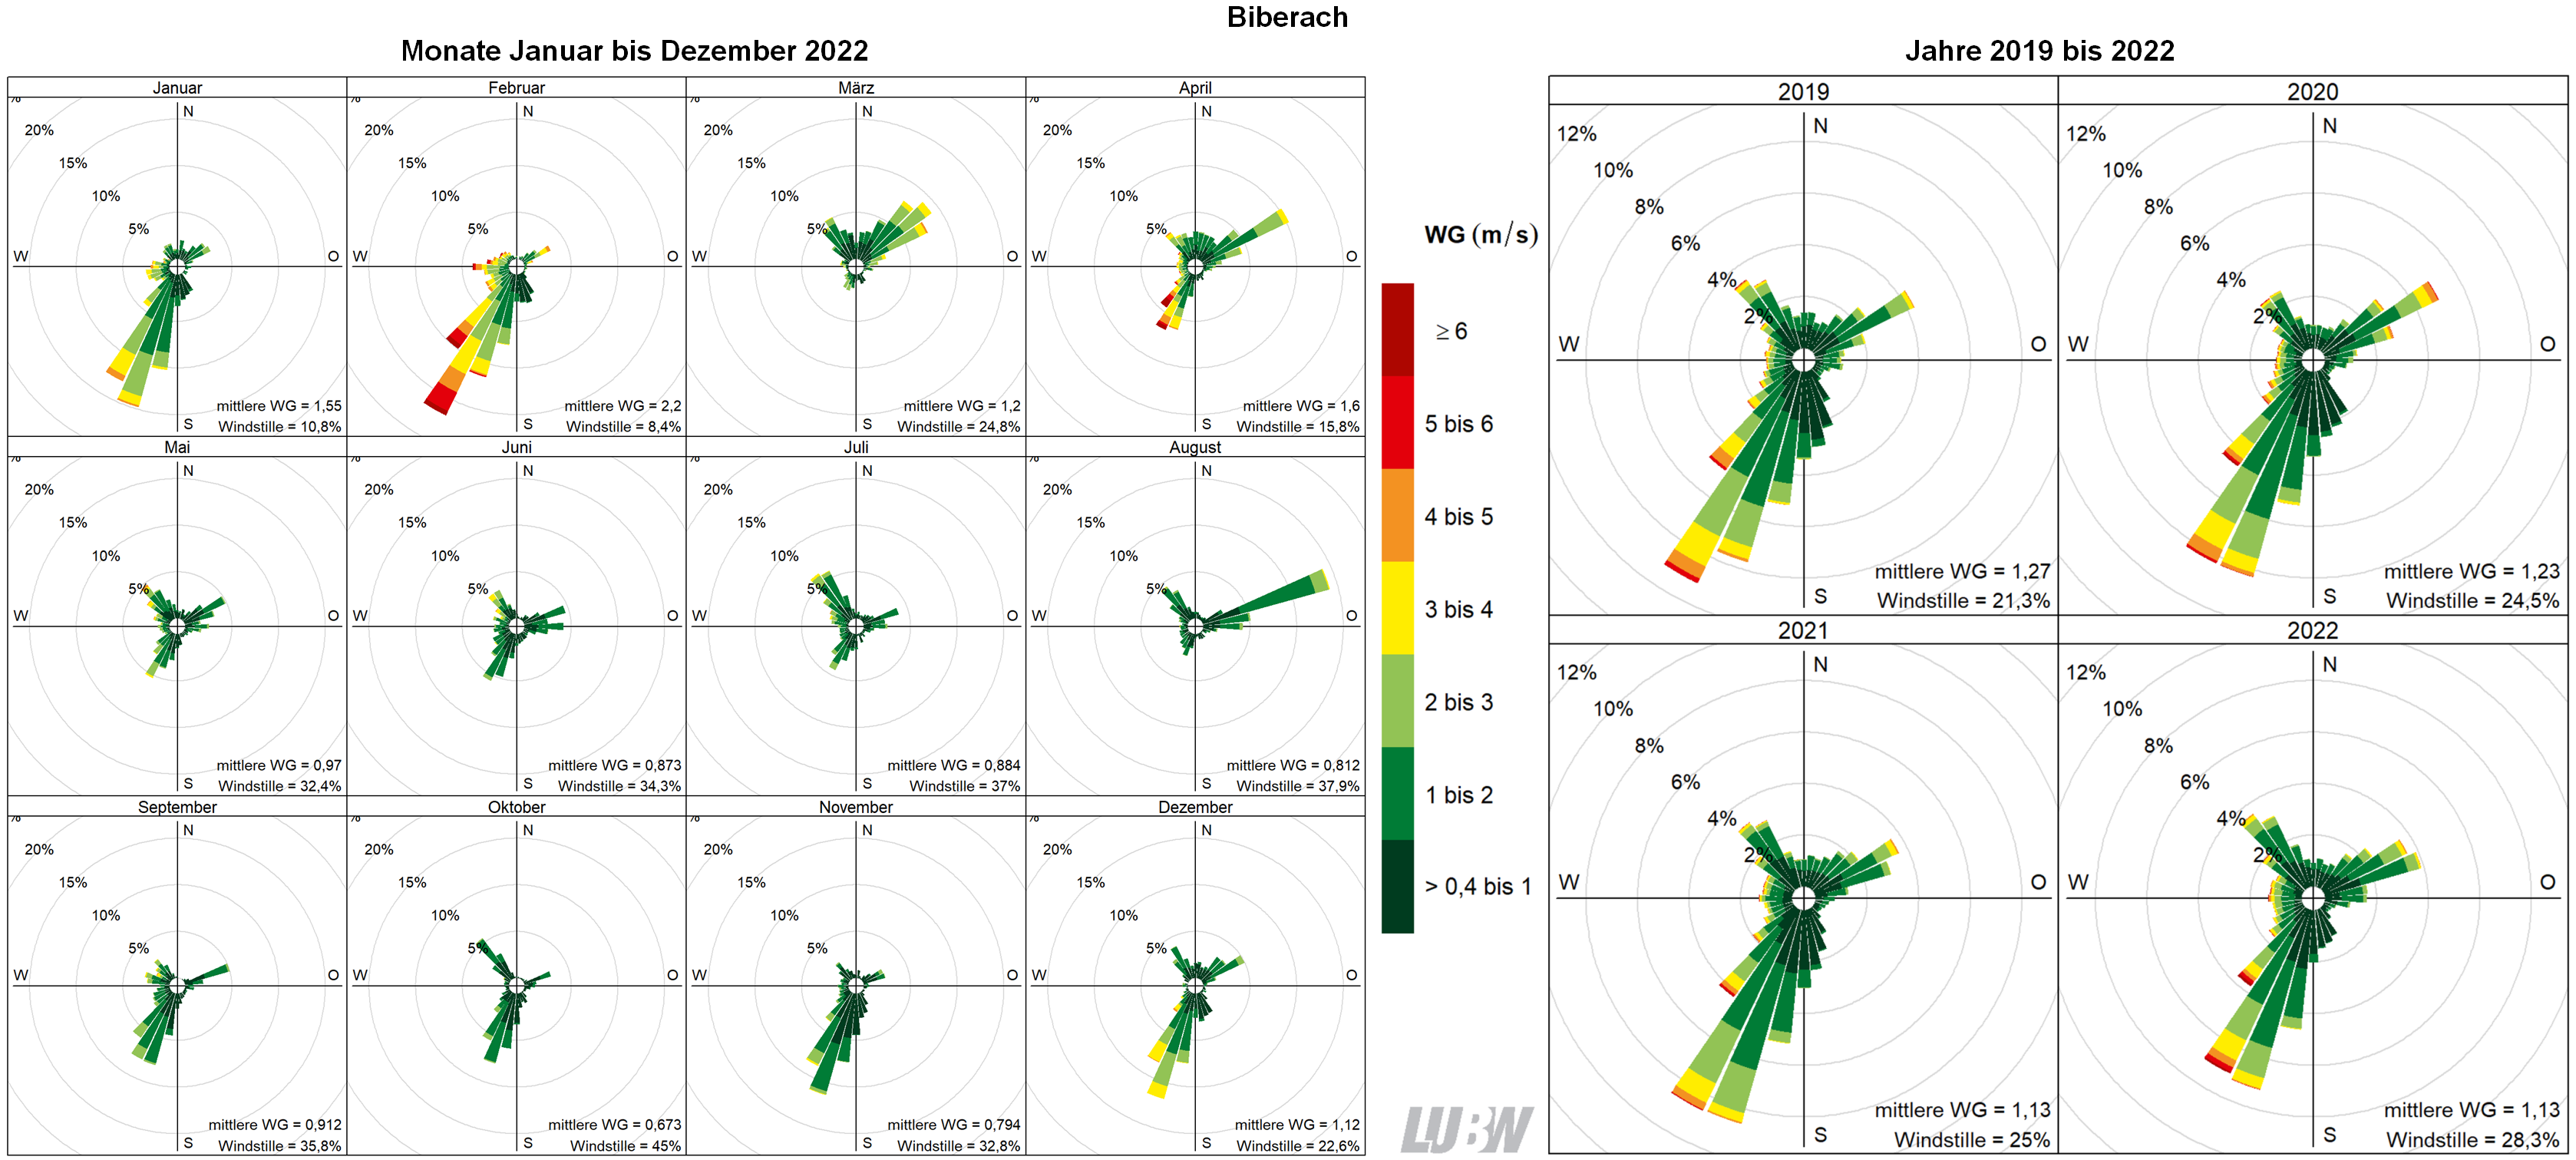  Mitttlere Windverteilung als Windrosen für die Monate Januar bis Dezember 2022 (linke Abbildung) sowie für die Jahre 2019 bis 2022 (rechte Abbildung) für den Standort Biberach. Weitere Informationen im umliegenden Text. 